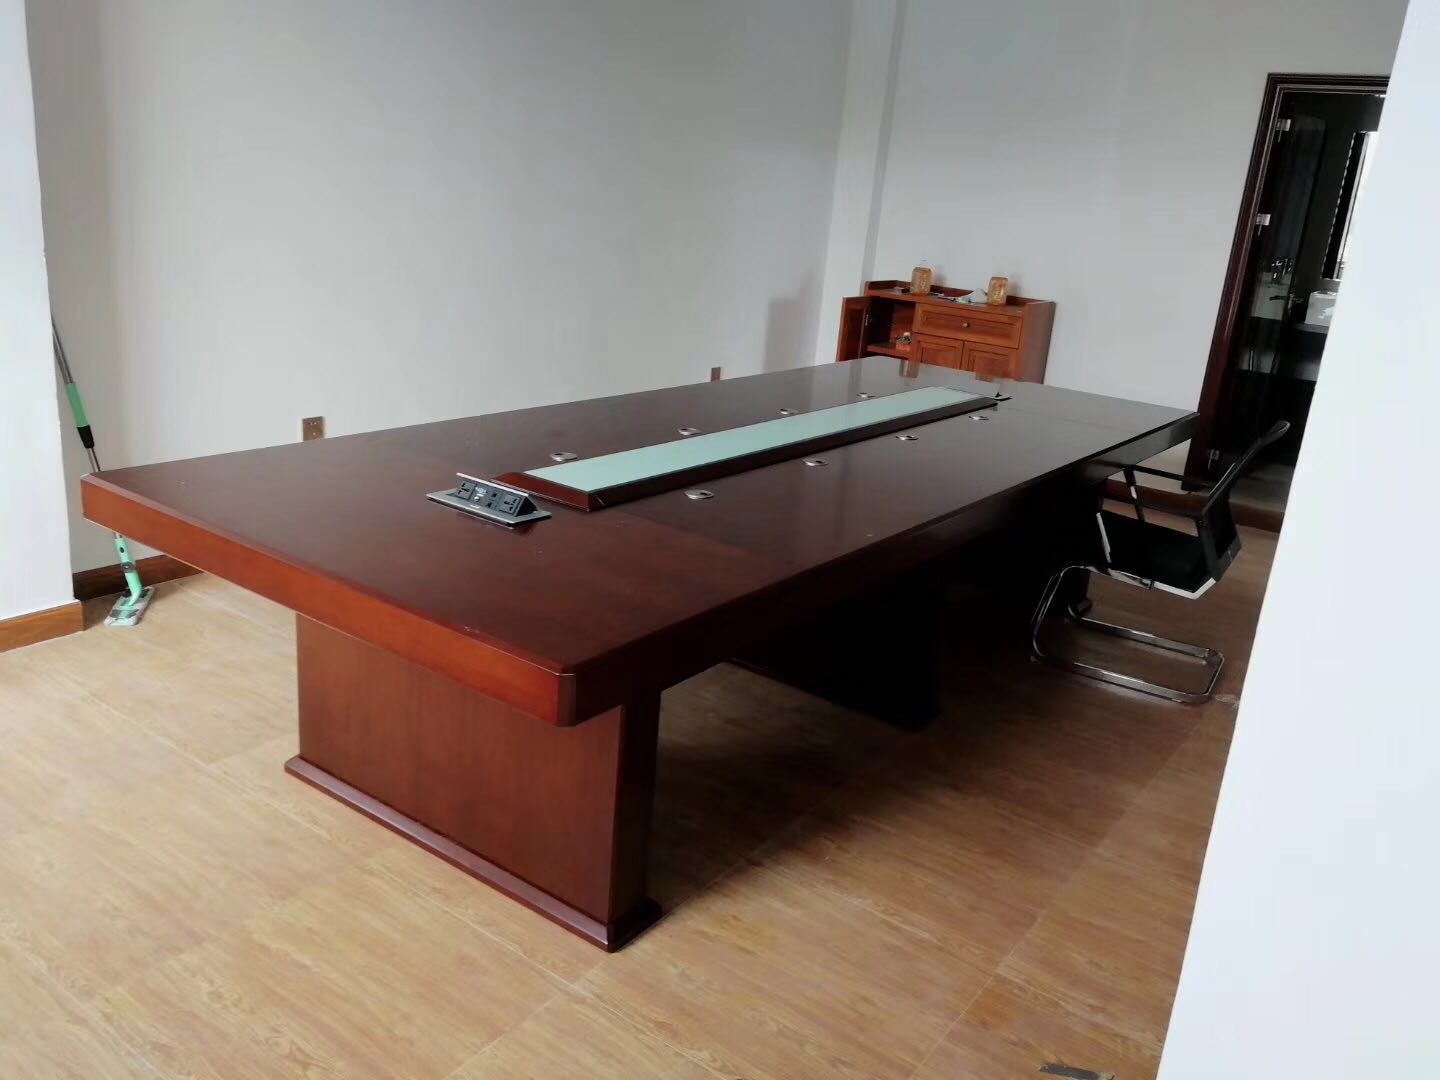 大型实木会议桌长桌椅组合椭圆形现代办公桌贴木皮会议桌创意现货图片